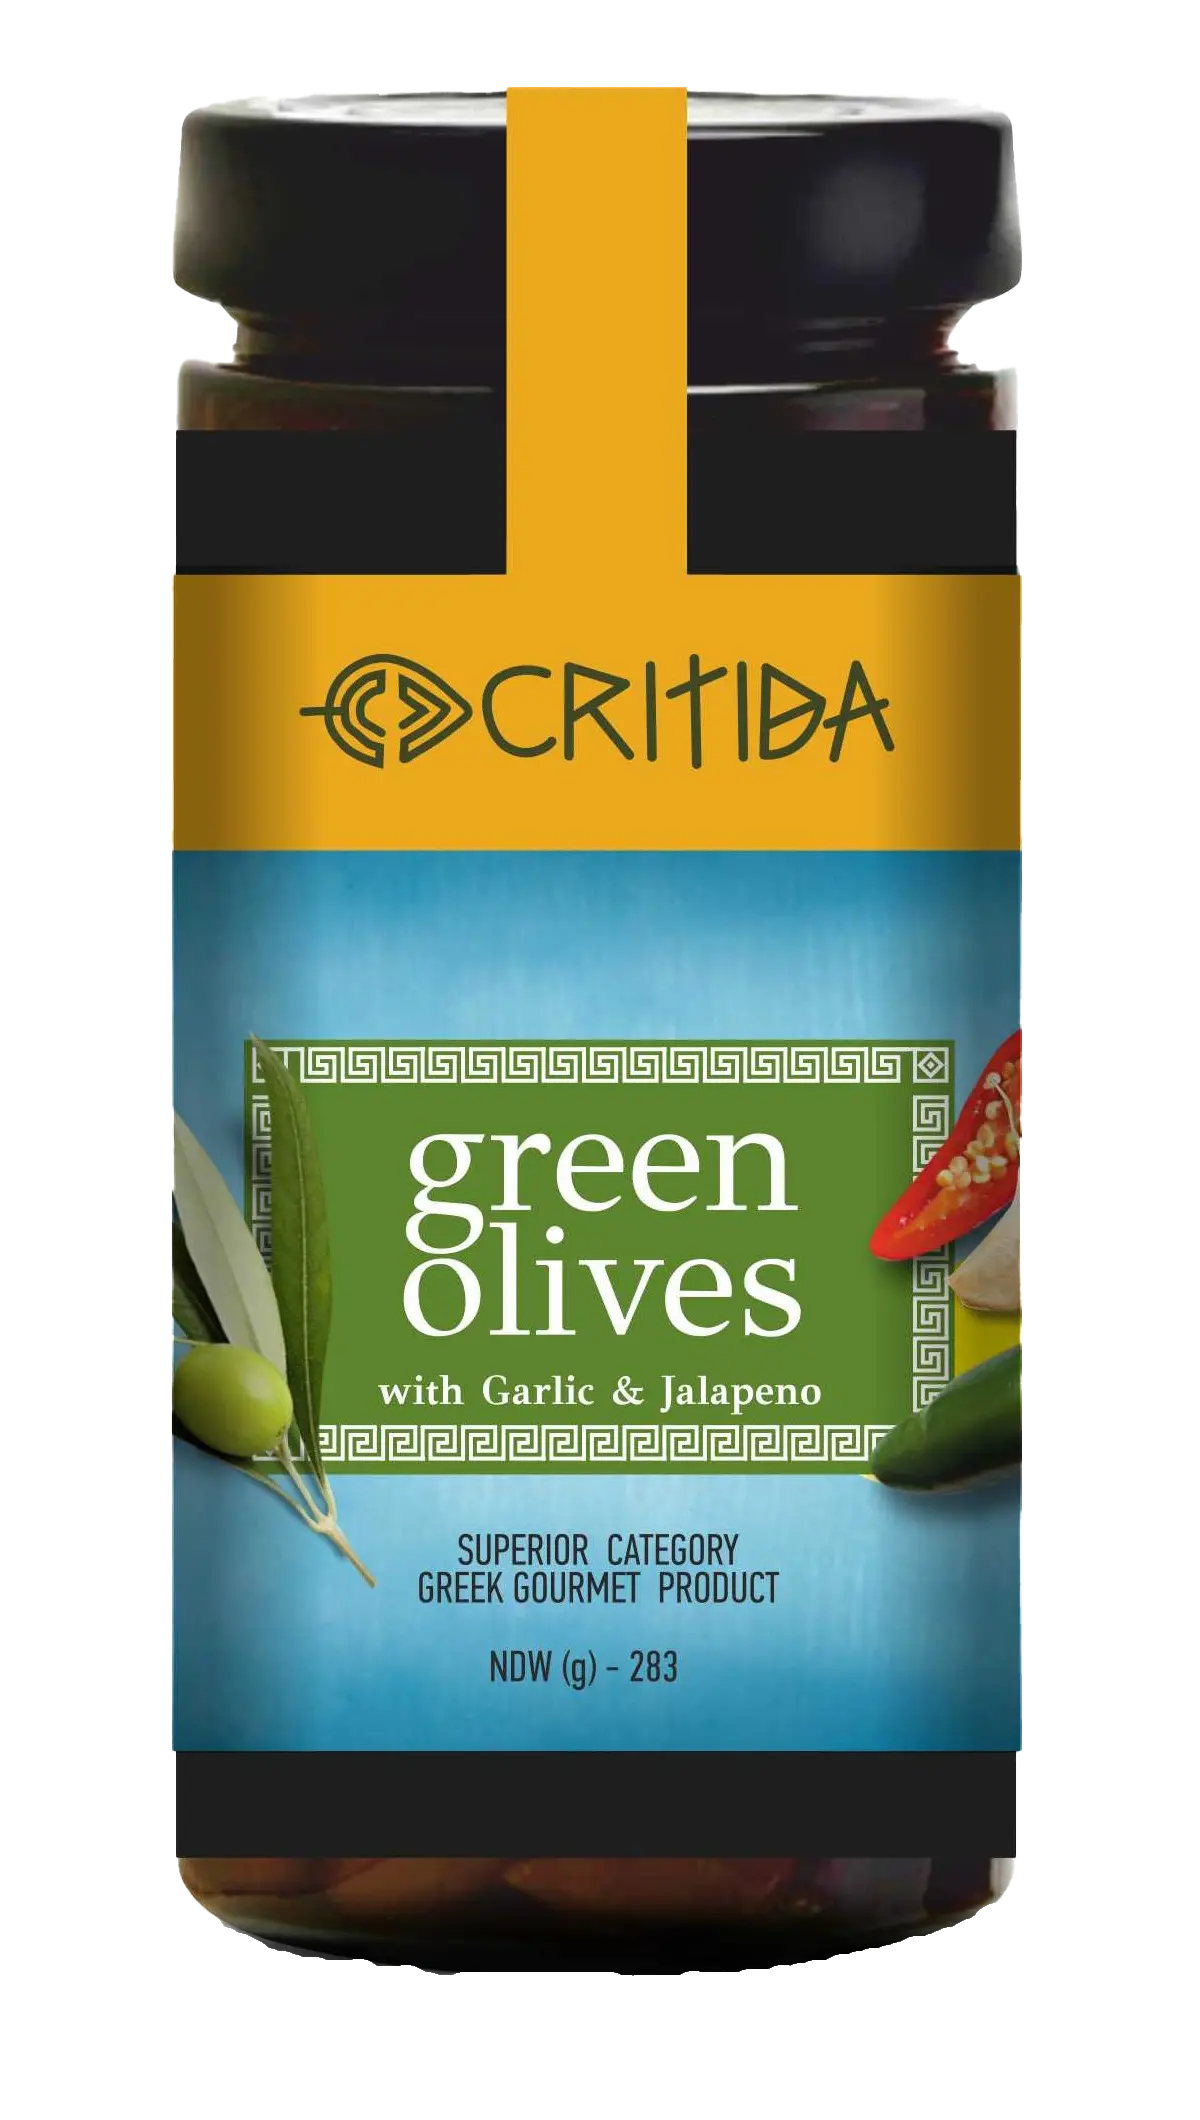 Greske bordoliven - grønne oliven